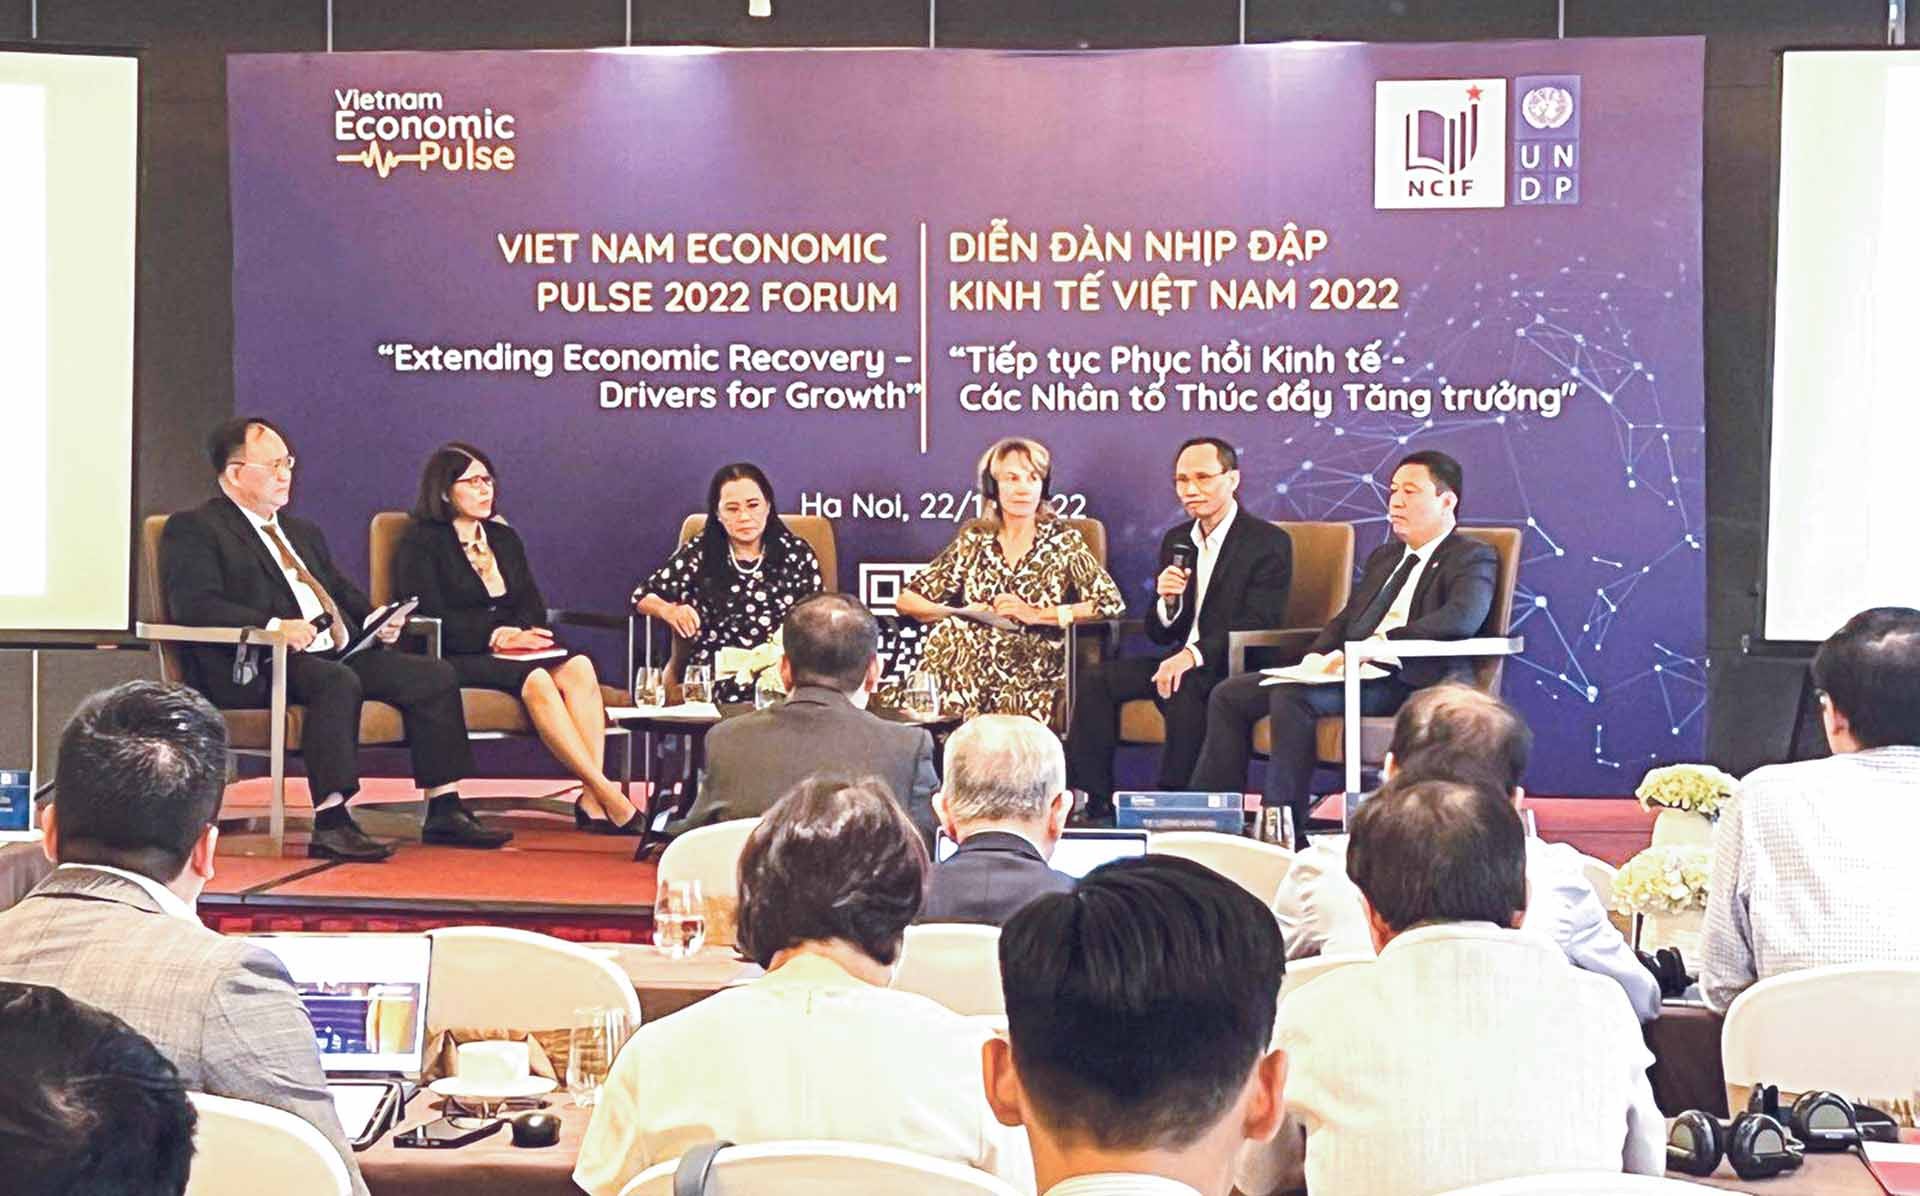 Các chuyên gia kinh tế tại Diễn đàn “Nhịp đập kinh tế Việt Nam 2022: Tiếp tục phục hồi kinh tế - Các nhân tố thúc đẩy tăng trưởng”,  ngày 22/11 tại Hà Nội. (Nguồn: Diễn đàn doanh nghiệp)